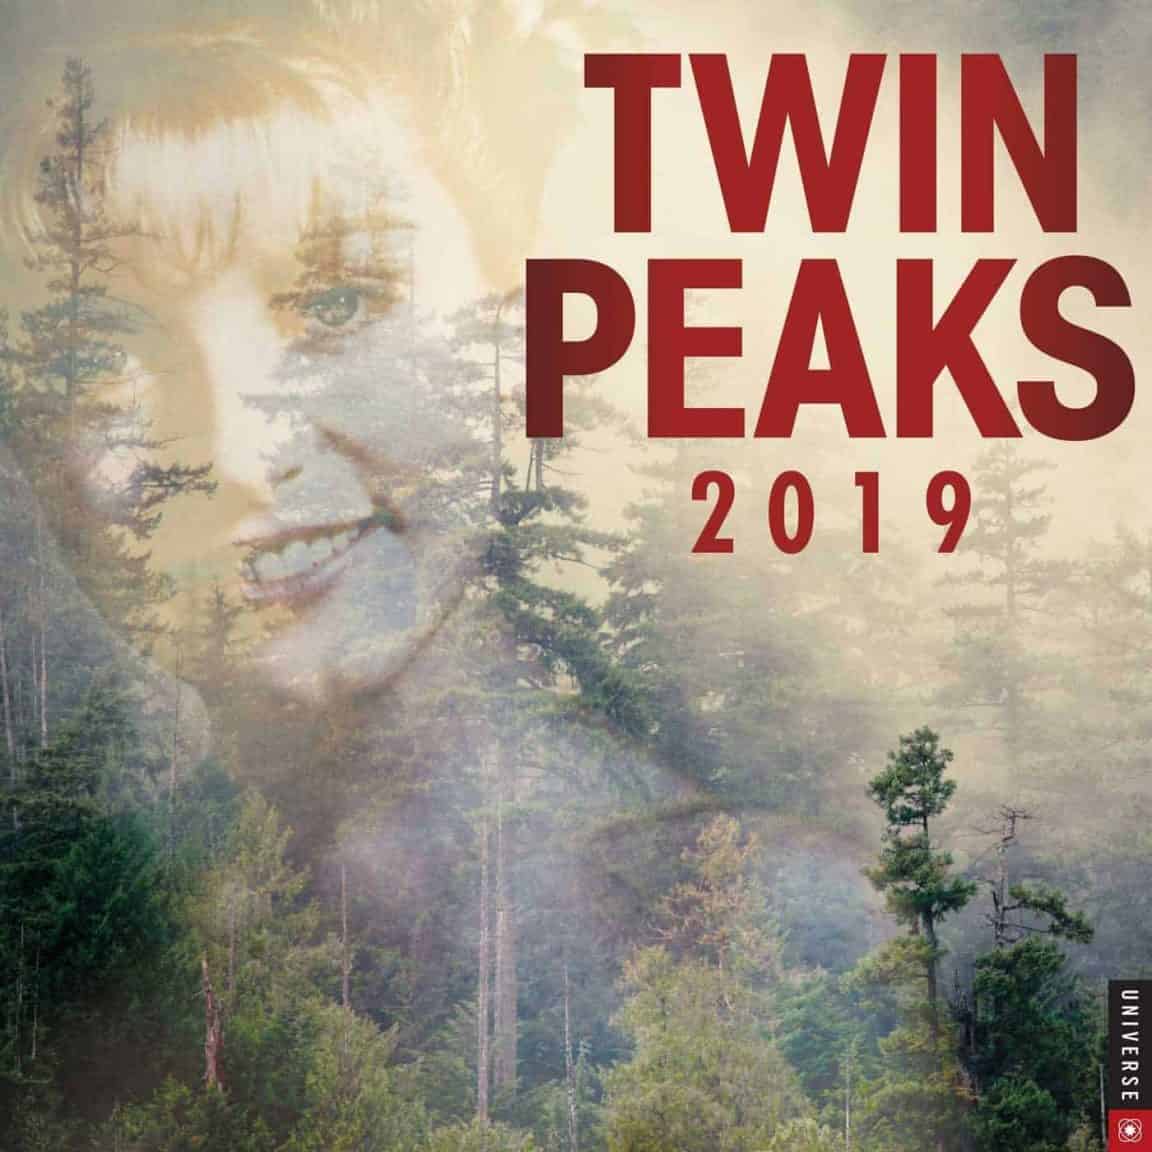 Twin Peaks 2019 Wall Calendar